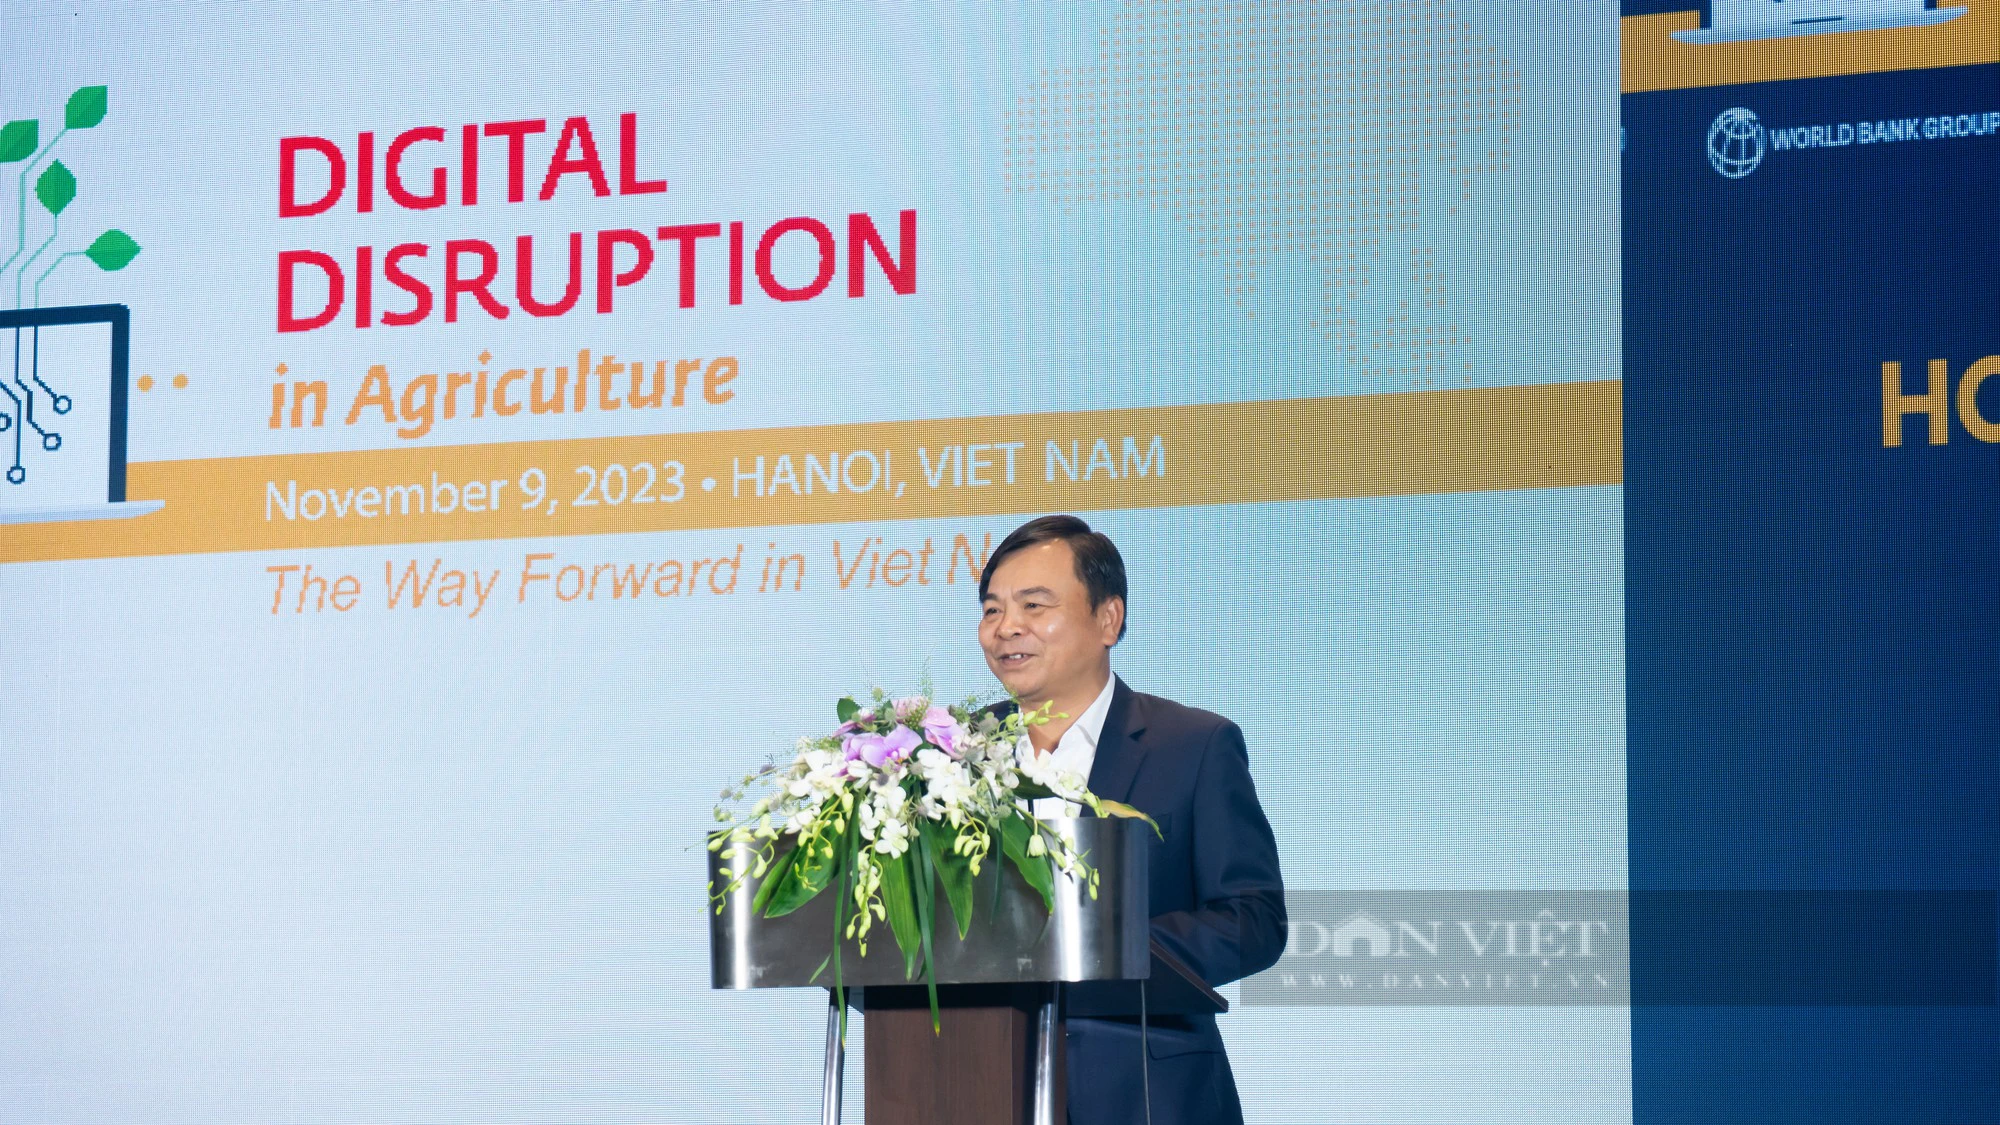 Chuyển đổi số trong nông nghiệp, trọng tâm để Việt Nam tiến bước - Ảnh 2.